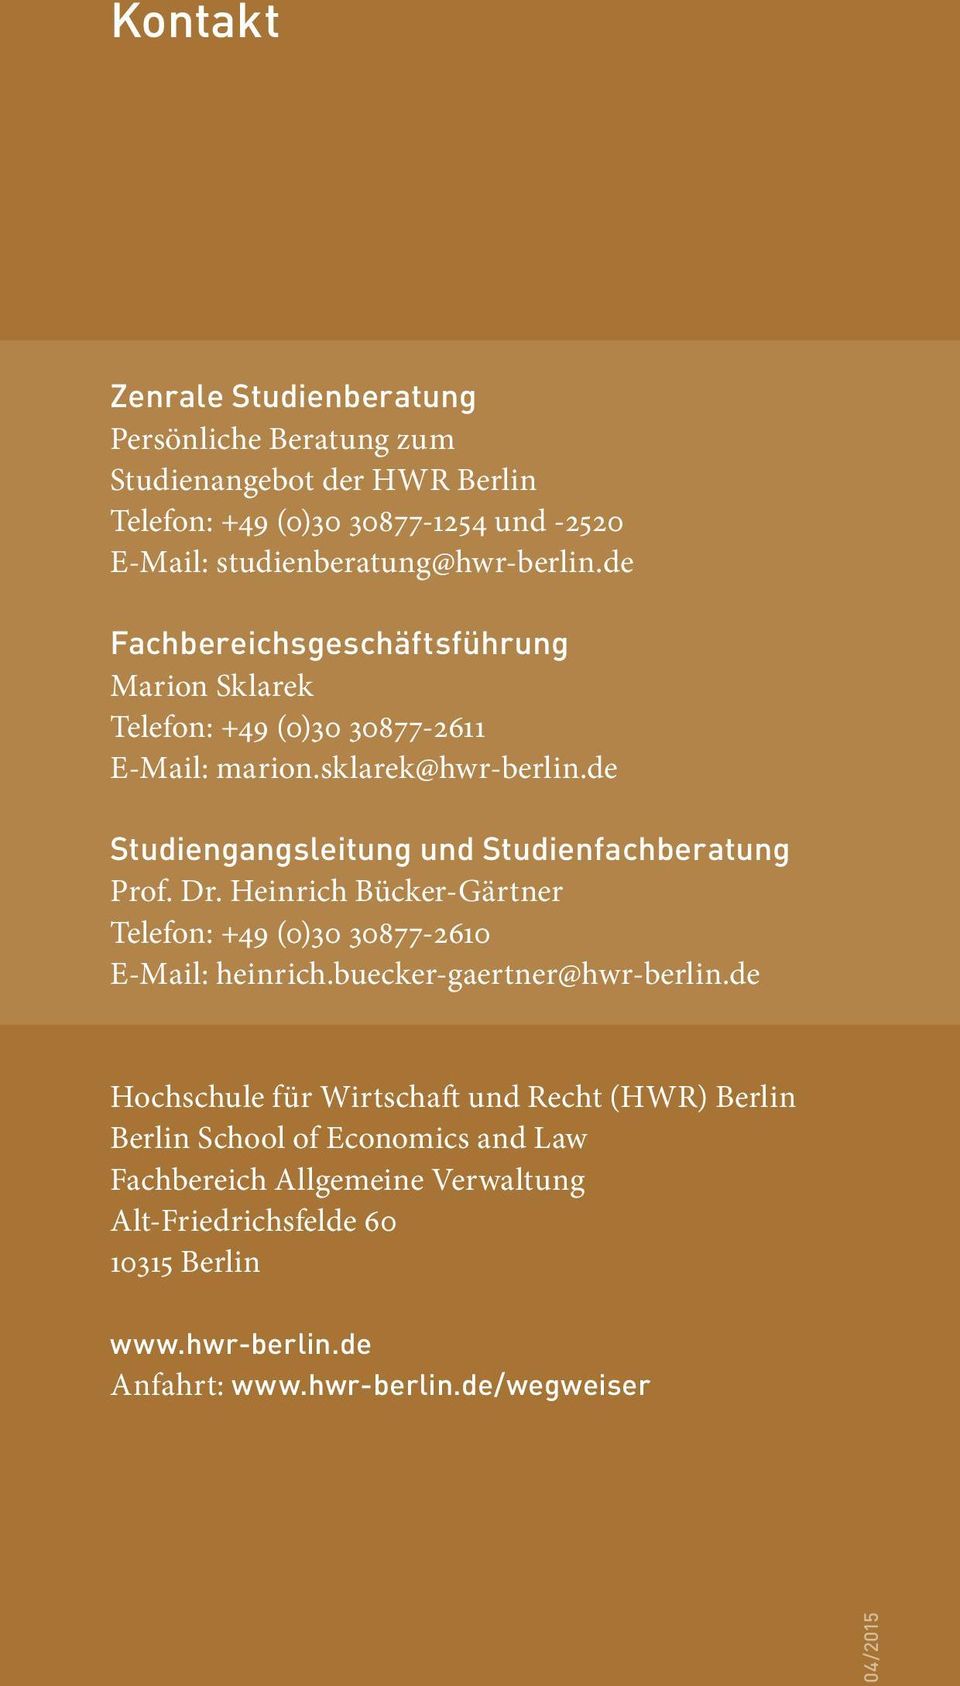 de Studiengangsleitung und Studienfachberatung Prof. Dr. Heinrich Bücker-Gärtner Telefon: +49 (0)30 30877-2610 E-Mail: heinrich.buecker-gaertner@hwr-berlin.